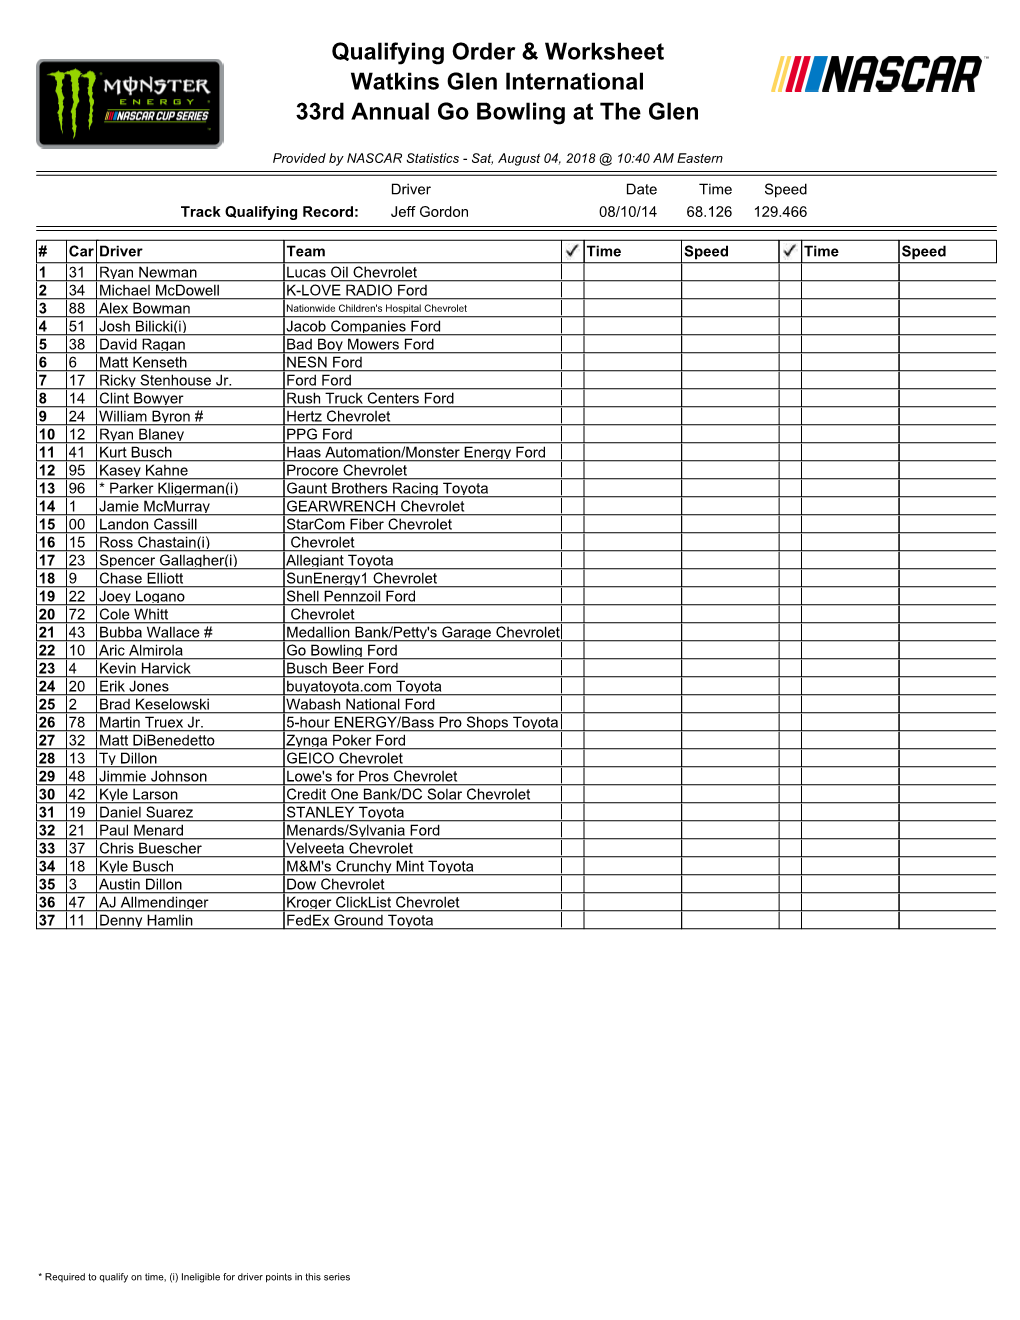 Qualifying Order & Worksheet Watkins Glen International 33Rd